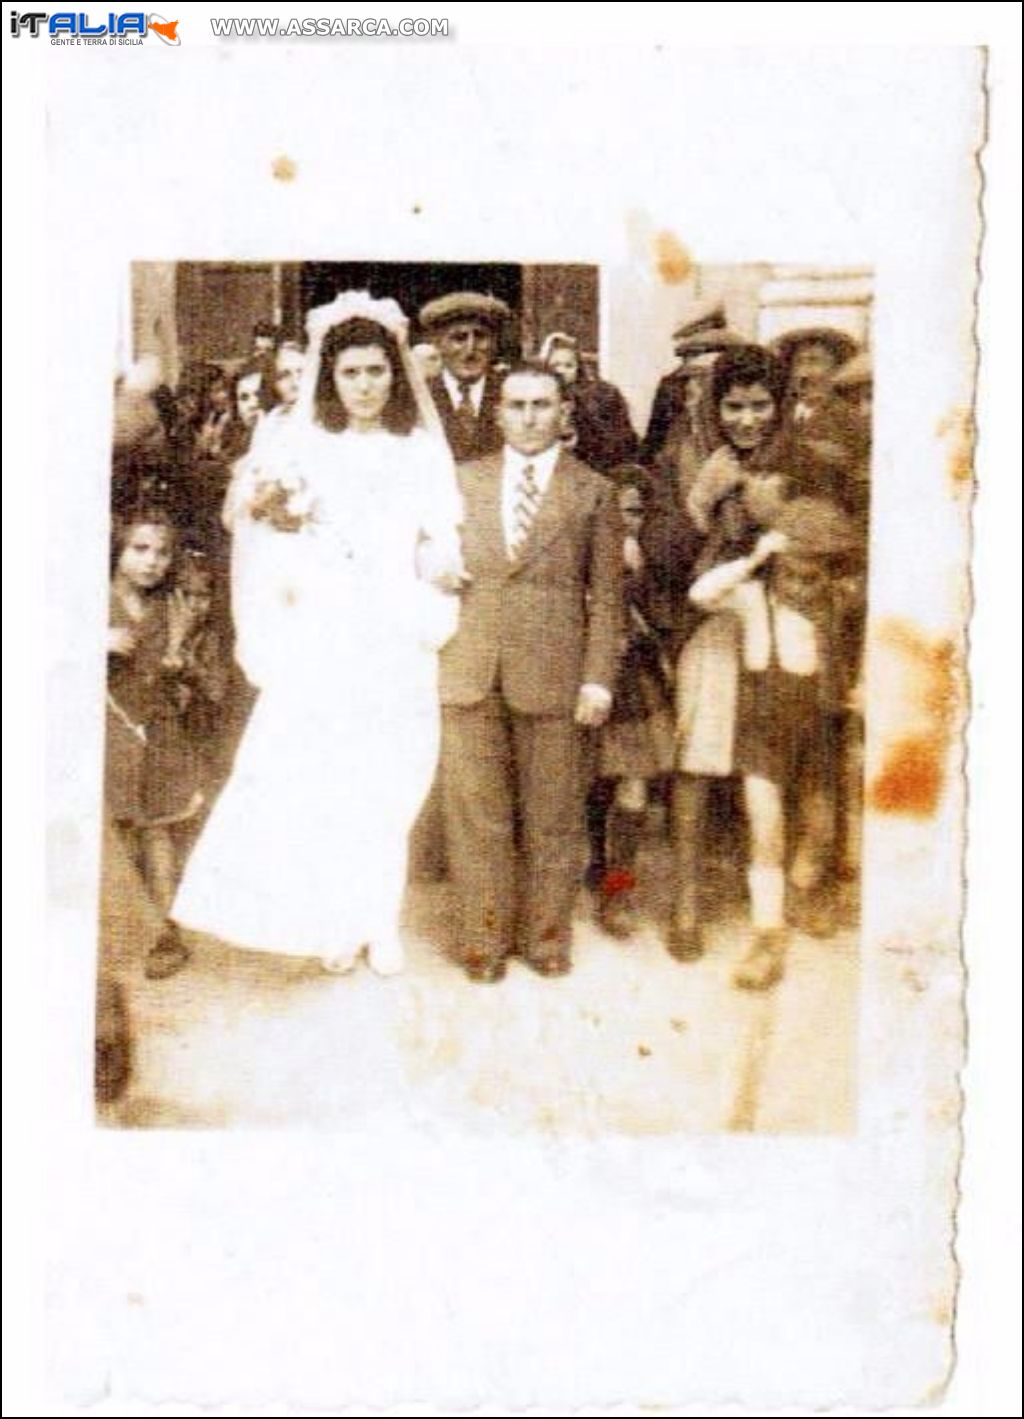 Matrimonio Cocchiara Giuseppe, Cardinale Anna
Agosto 1948